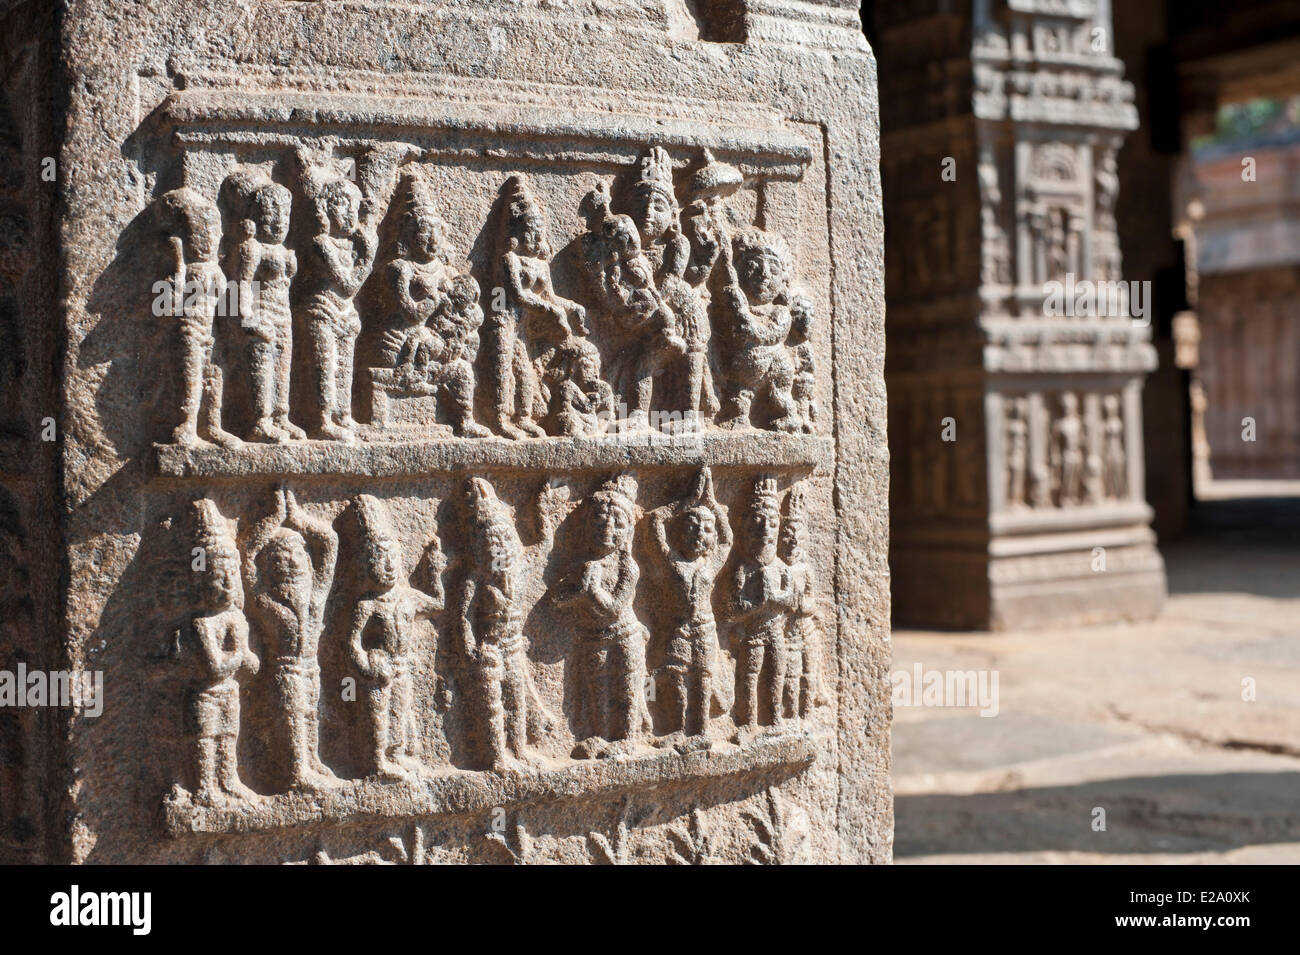 India, Tamil Nadu, Darasuram, il tempio Airavatesvara fa parte dei grandi templi viventi dei Chola elencati come Patrimonio mondiale Foto Stock